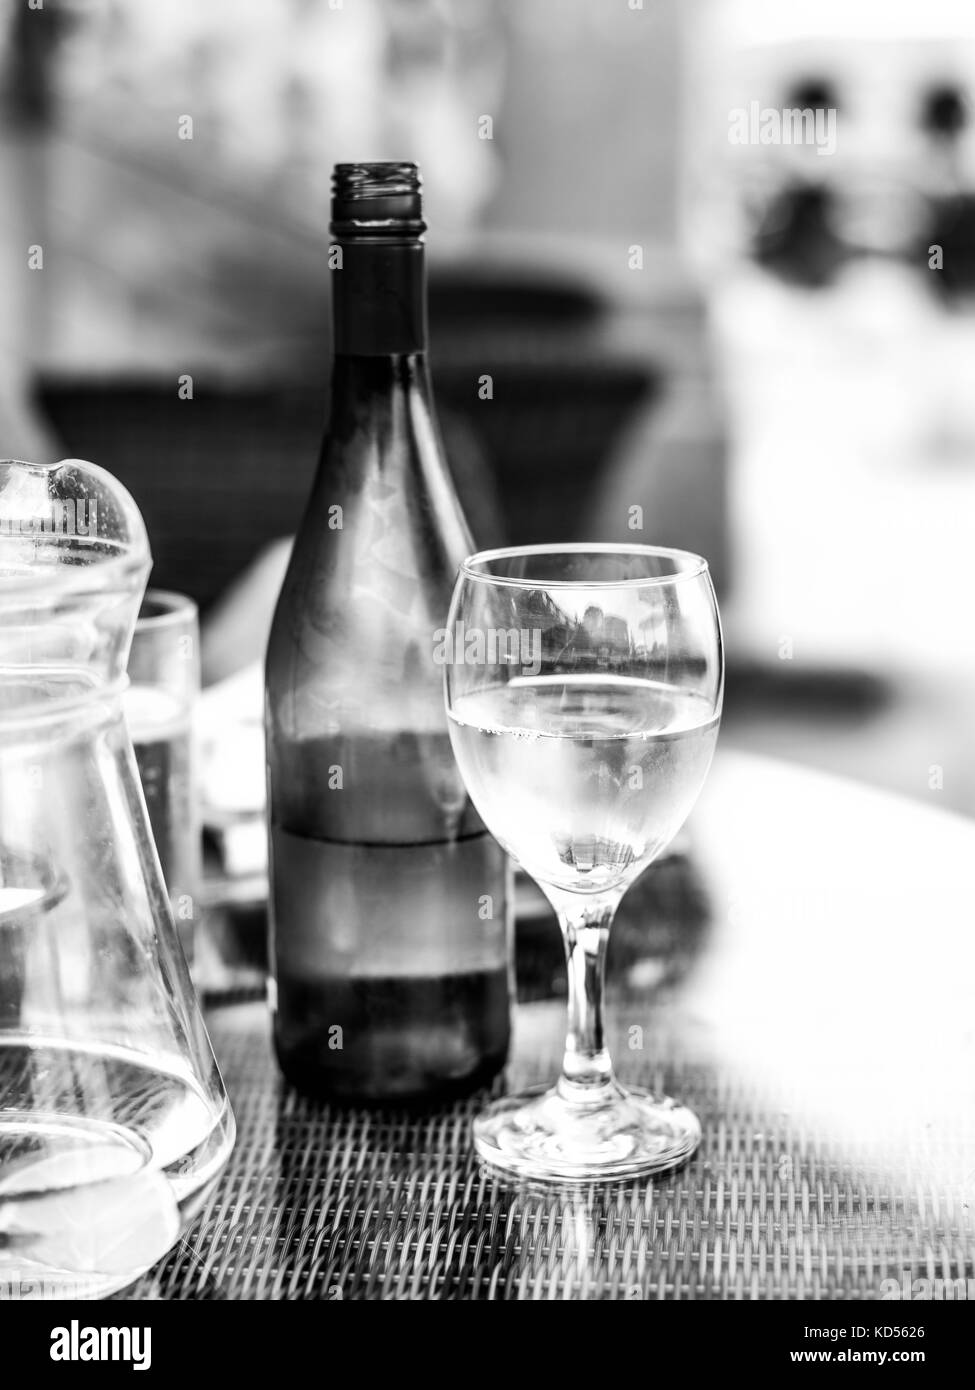 L'image monochrome noir et blanc d'un verre de vin blanc à côté d'une bouteille de vin sur une table avec une carafe d'eau Banque D'Images